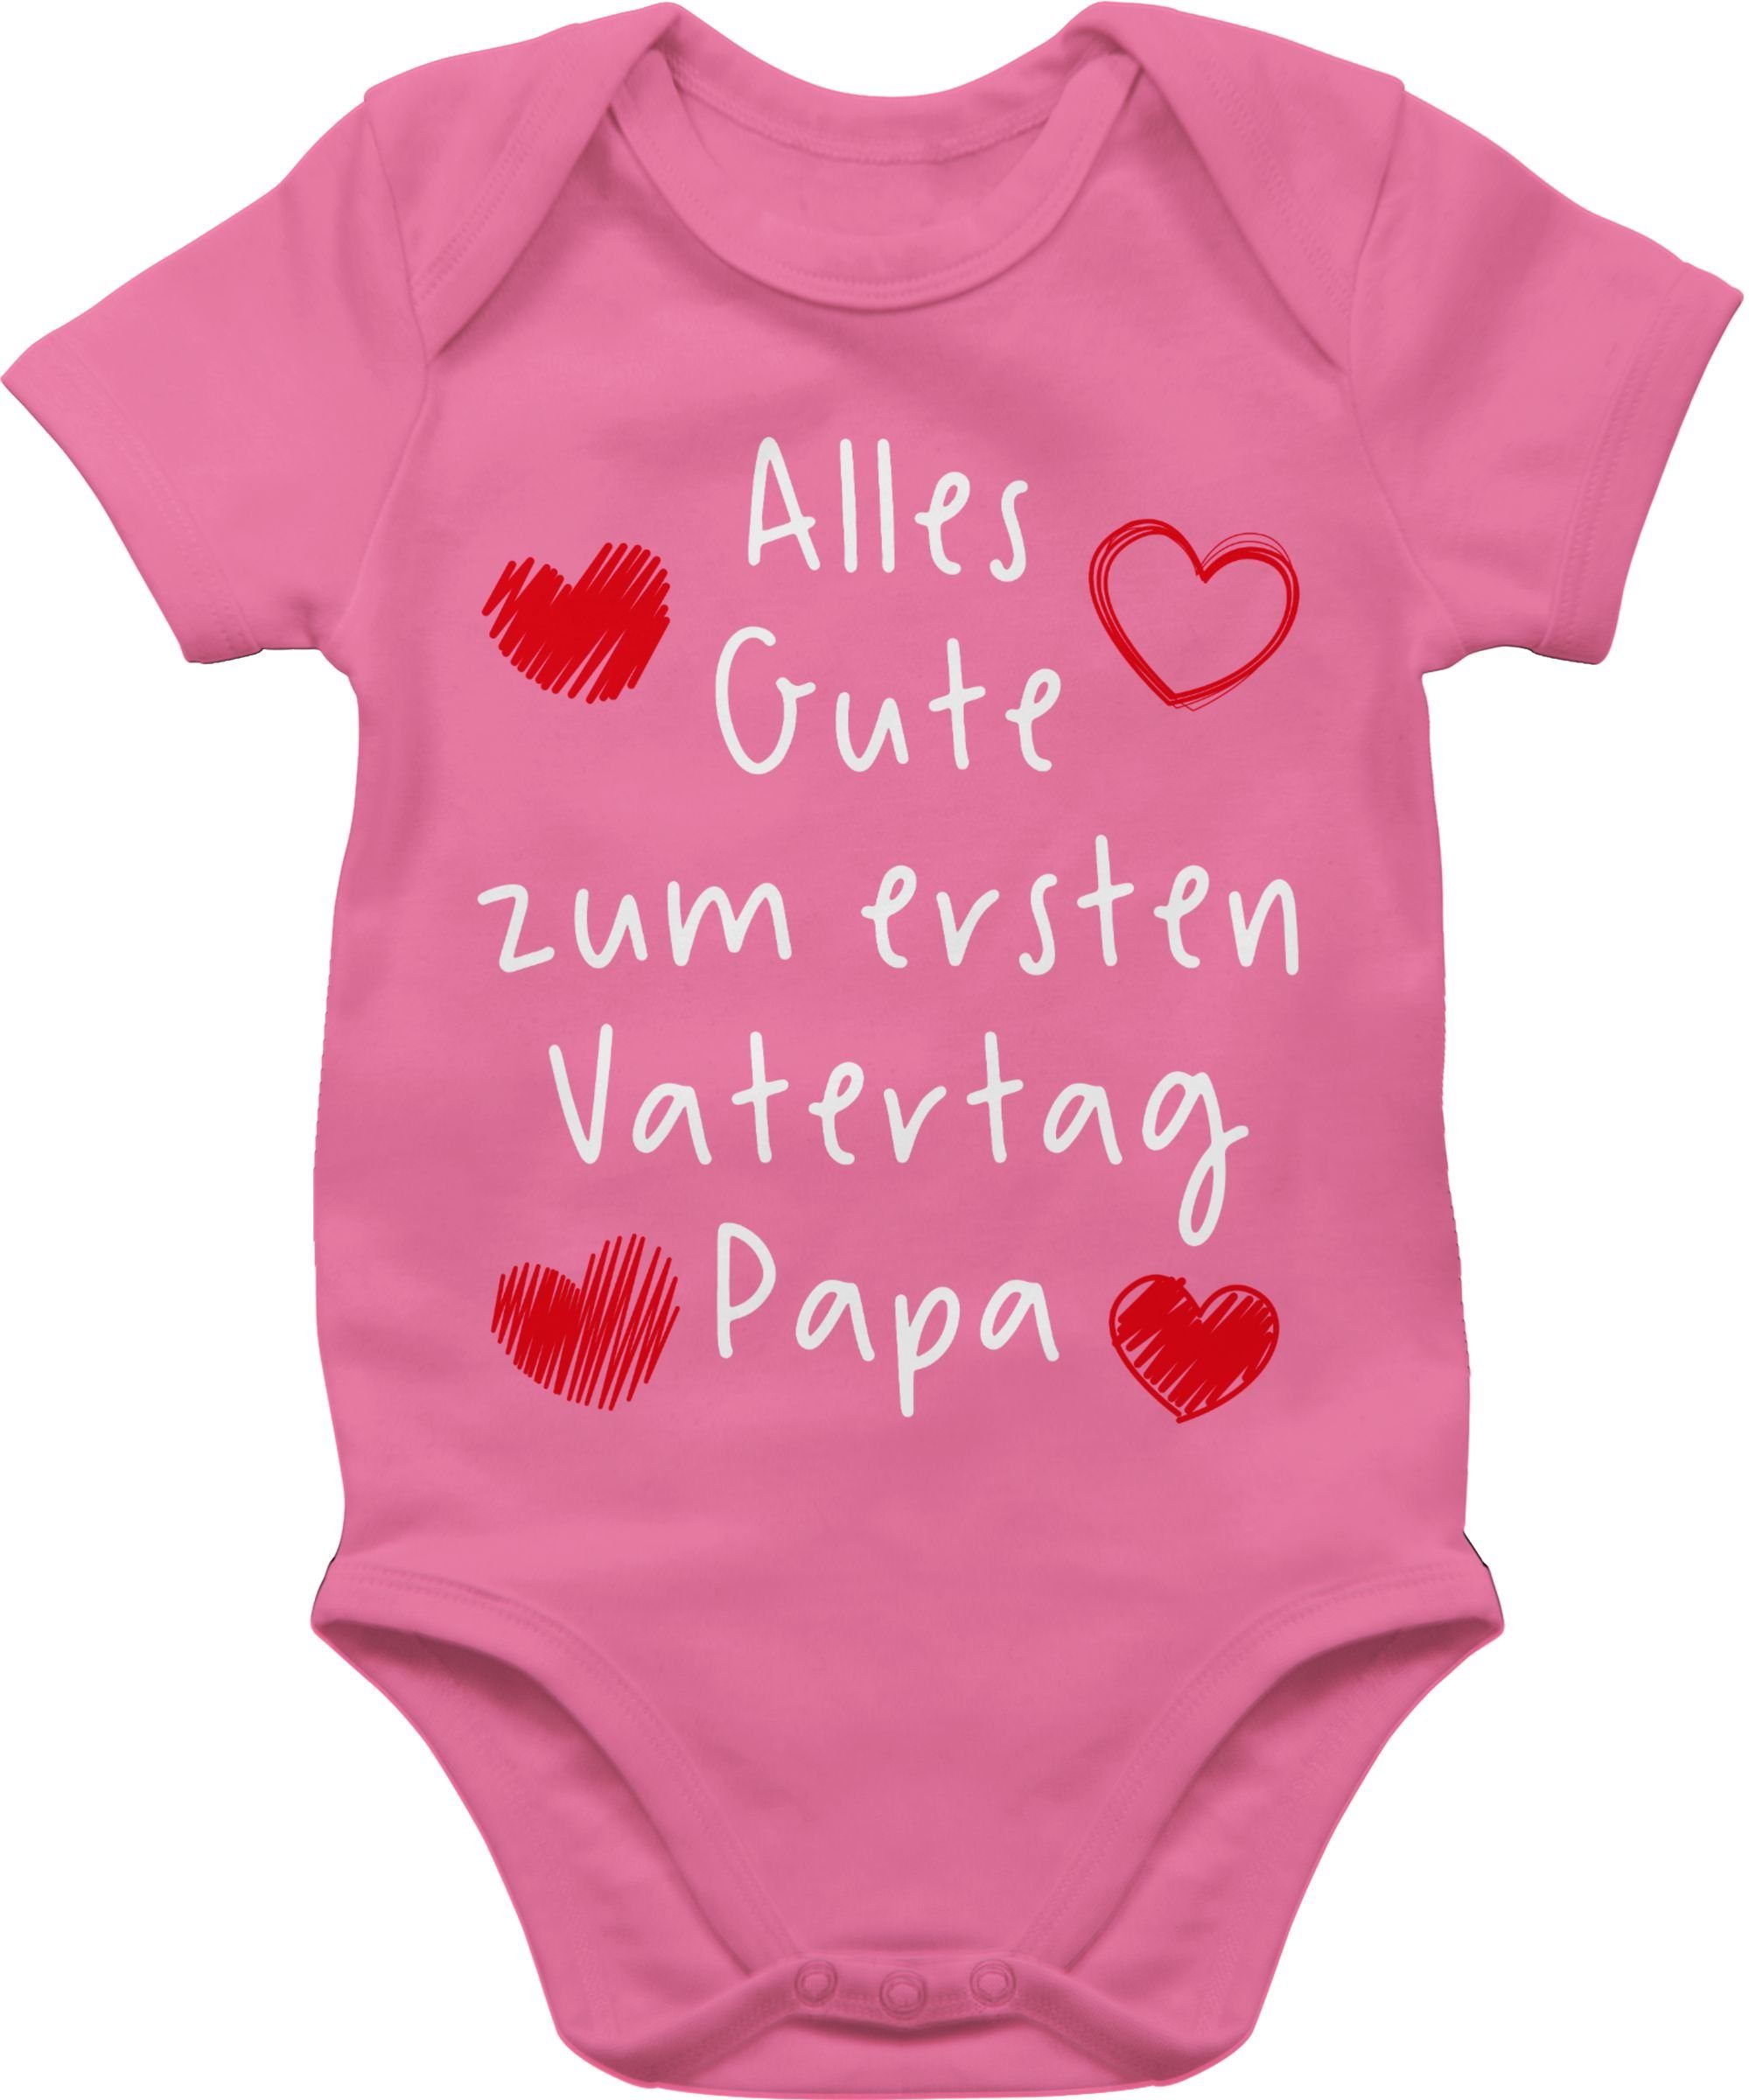 Shirtracer Shirtbody Alles Gute zum ersten Vatertag Handschrift weiß Geschenk Vatertag Baby 3 Pink